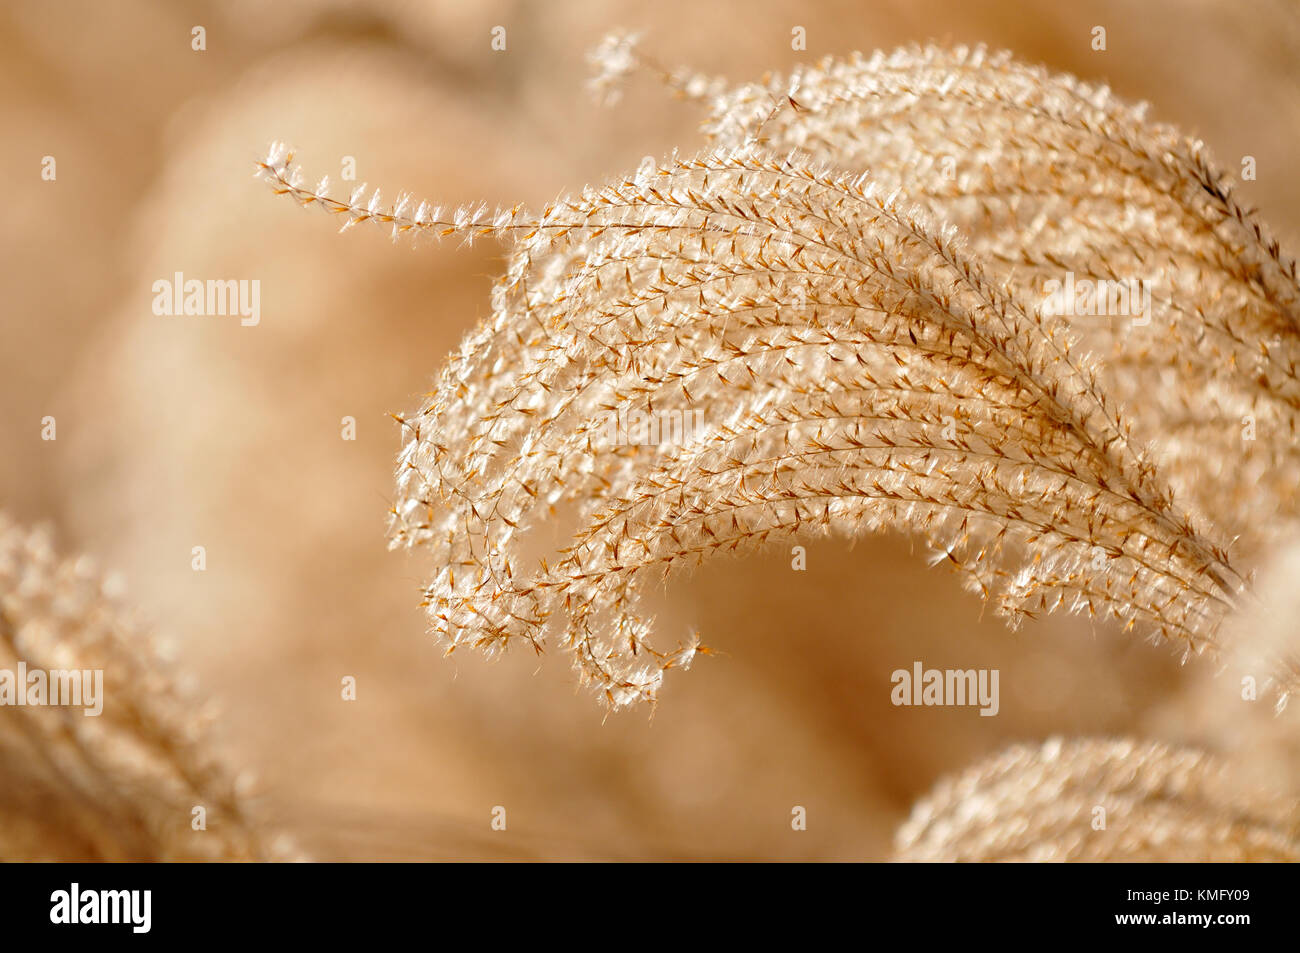 Fond d'herbe ornementale. détail de l'herbe de jeune fille (Miscanthus sinensis) à l'automne. Voûte gracieuse avec de belles tiges couleur bronze. Banque D'Images